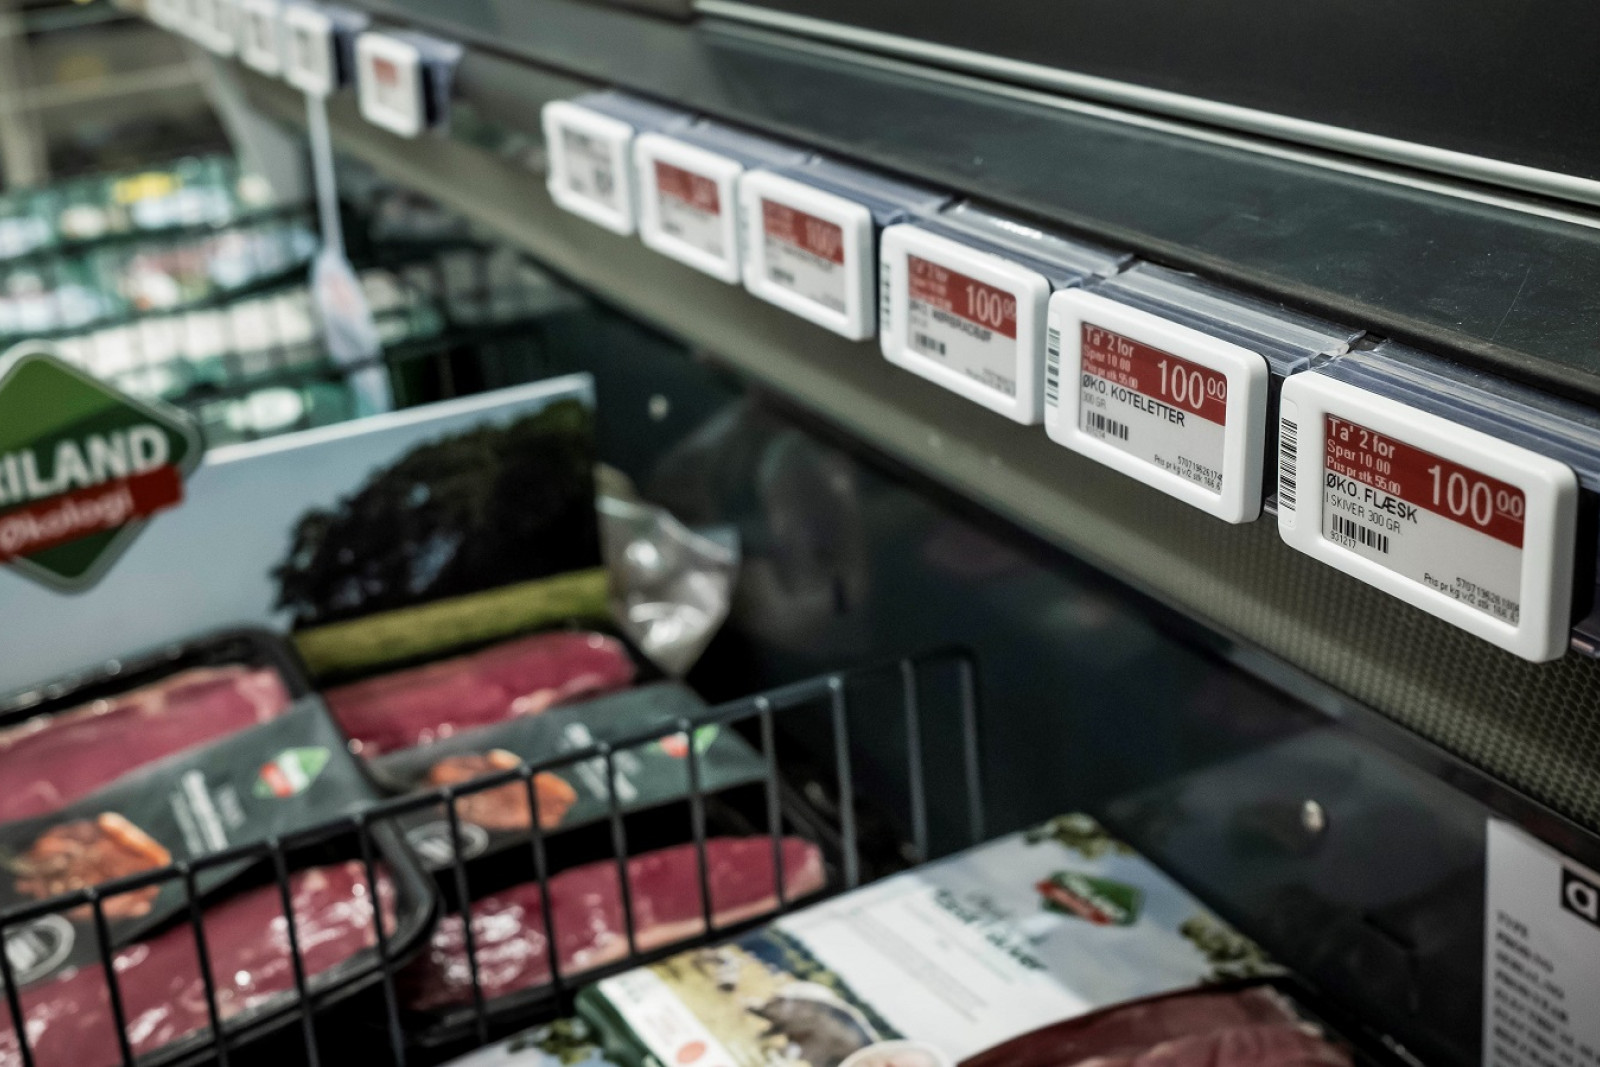 Kød fra Friland på tilbud i køledisk i Meny.